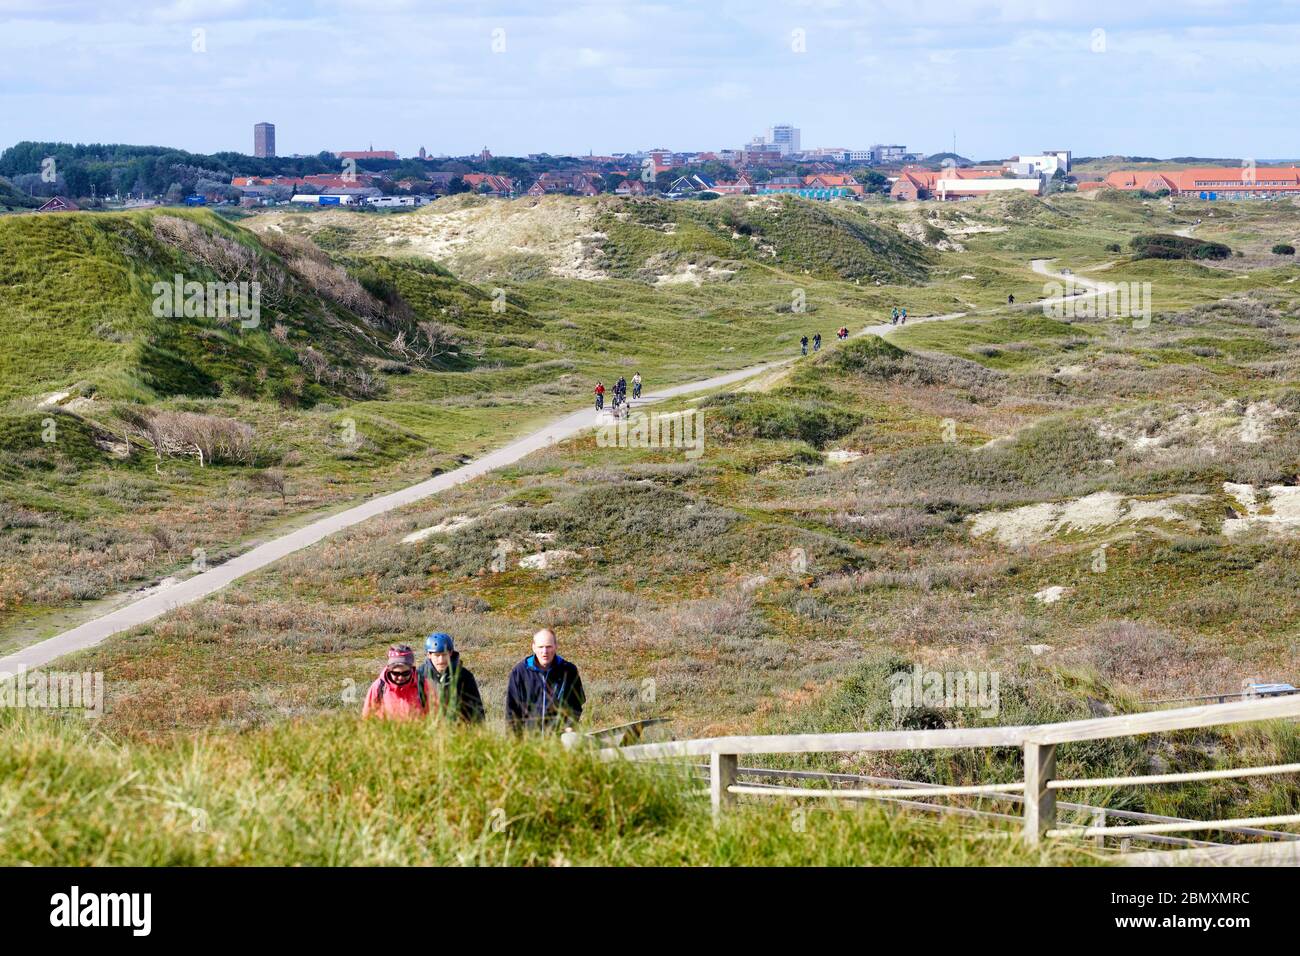 Die weisse Duene von Norderney ist auch in der Nebensaison ein beliebter Aussichtspunkt. Blick a Richtung Stadt. Foto Stock